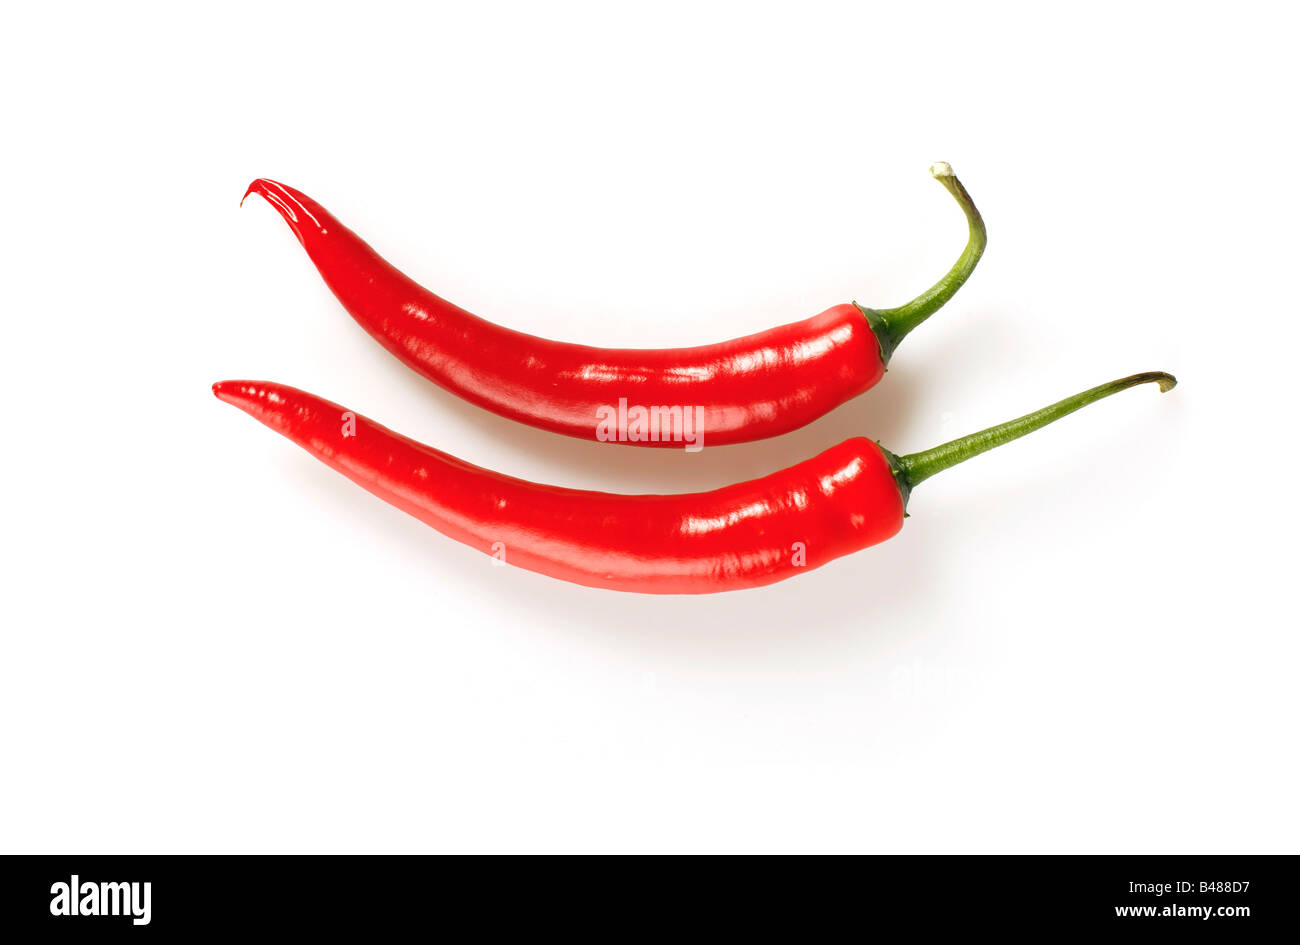 Isolato colpo di red hot chili peppers su sfondo bianco Foto Stock